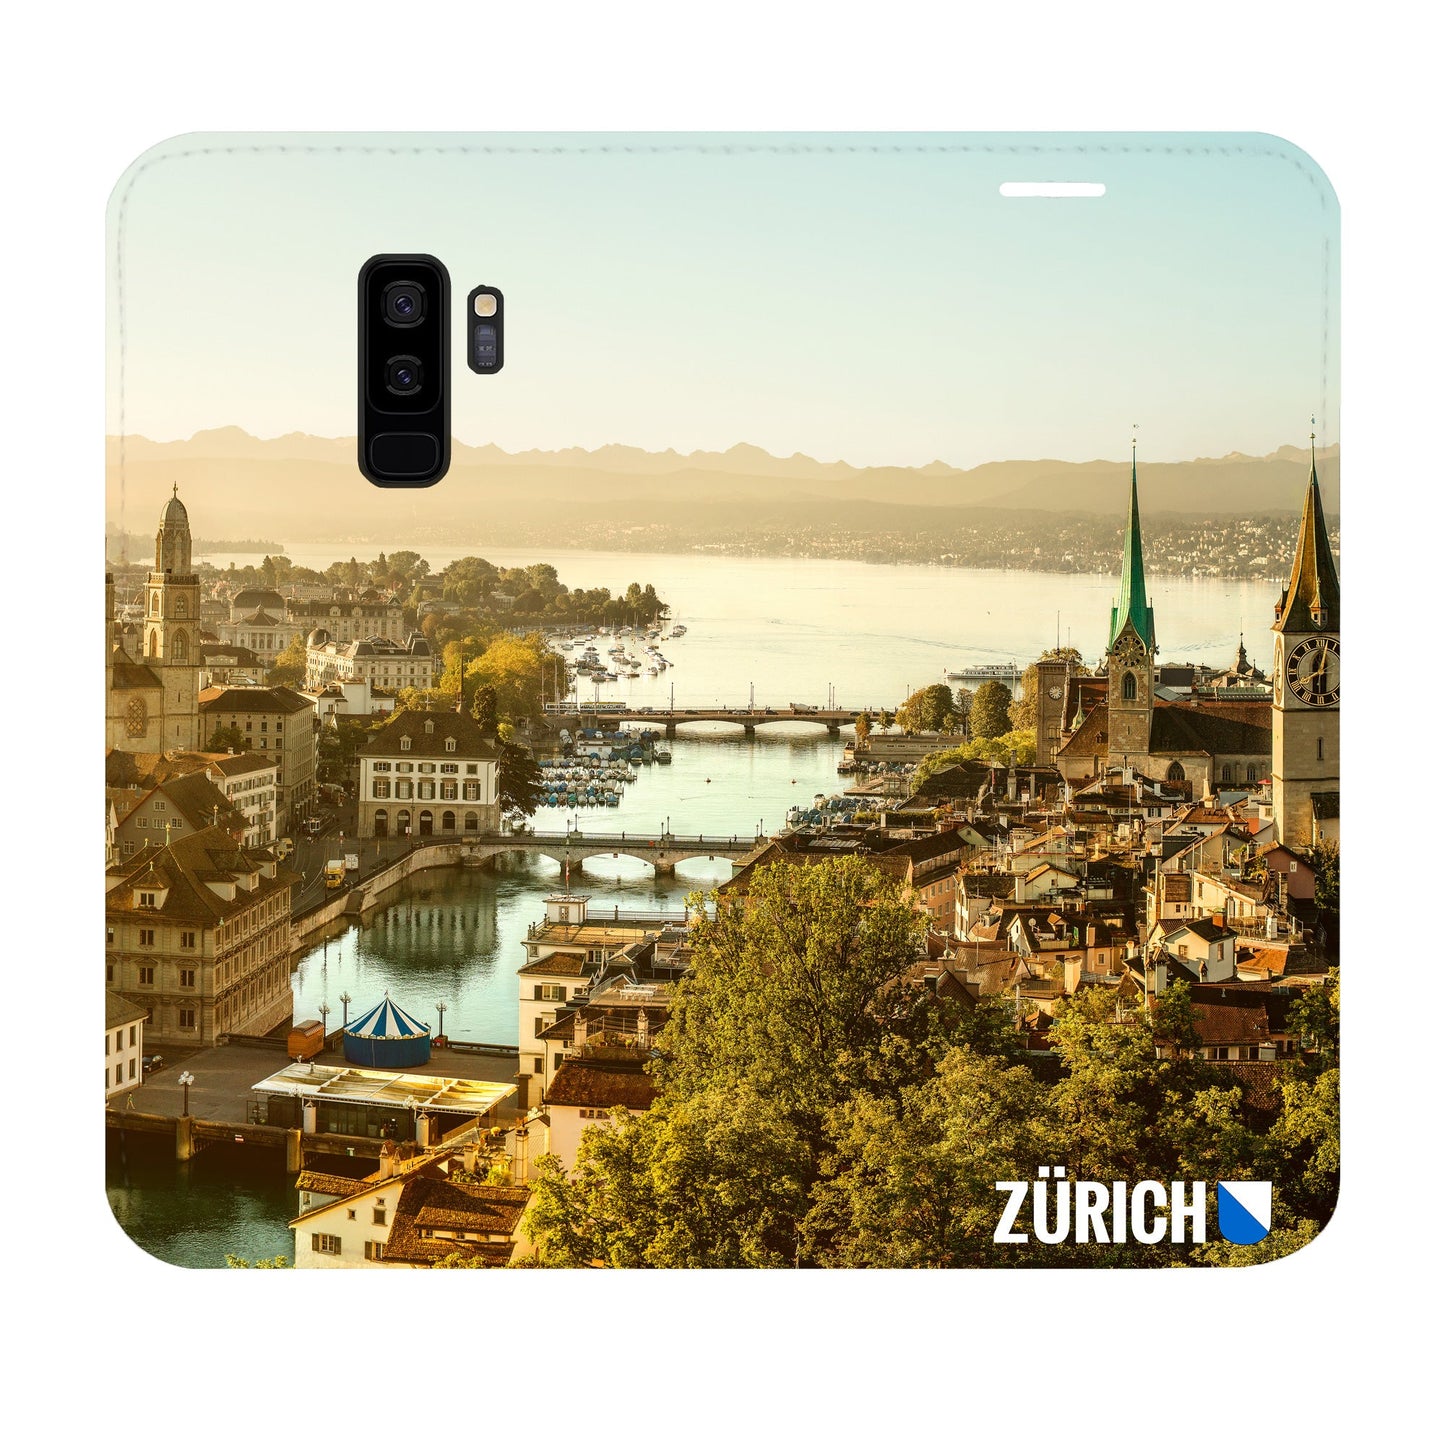 Zürich City von Oben Panorama Case für Samsung Galaxy S9 Plus